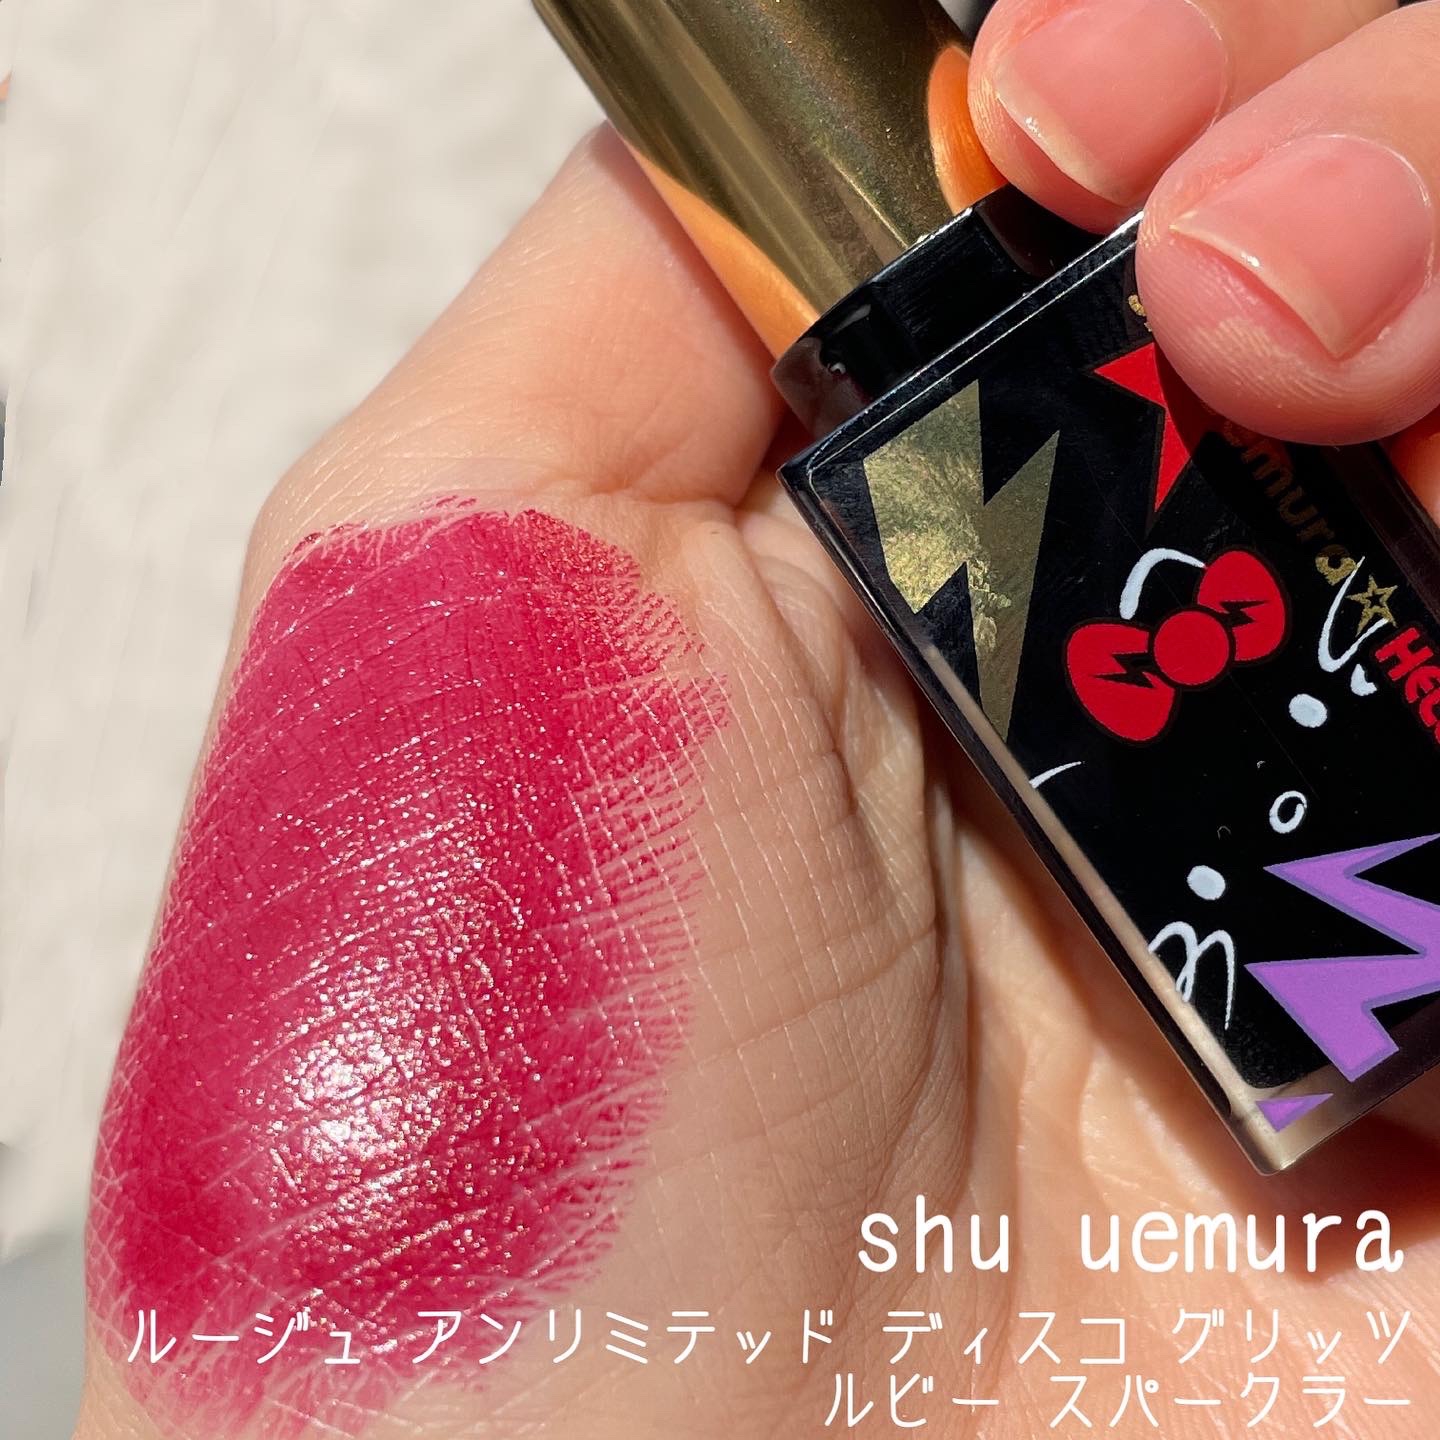 shu uemura(シュウ ウエムラ) ルージュ アンリミテッド ディスコ グリッツの良い点・メリットに関するなゆさんの口コミ画像2